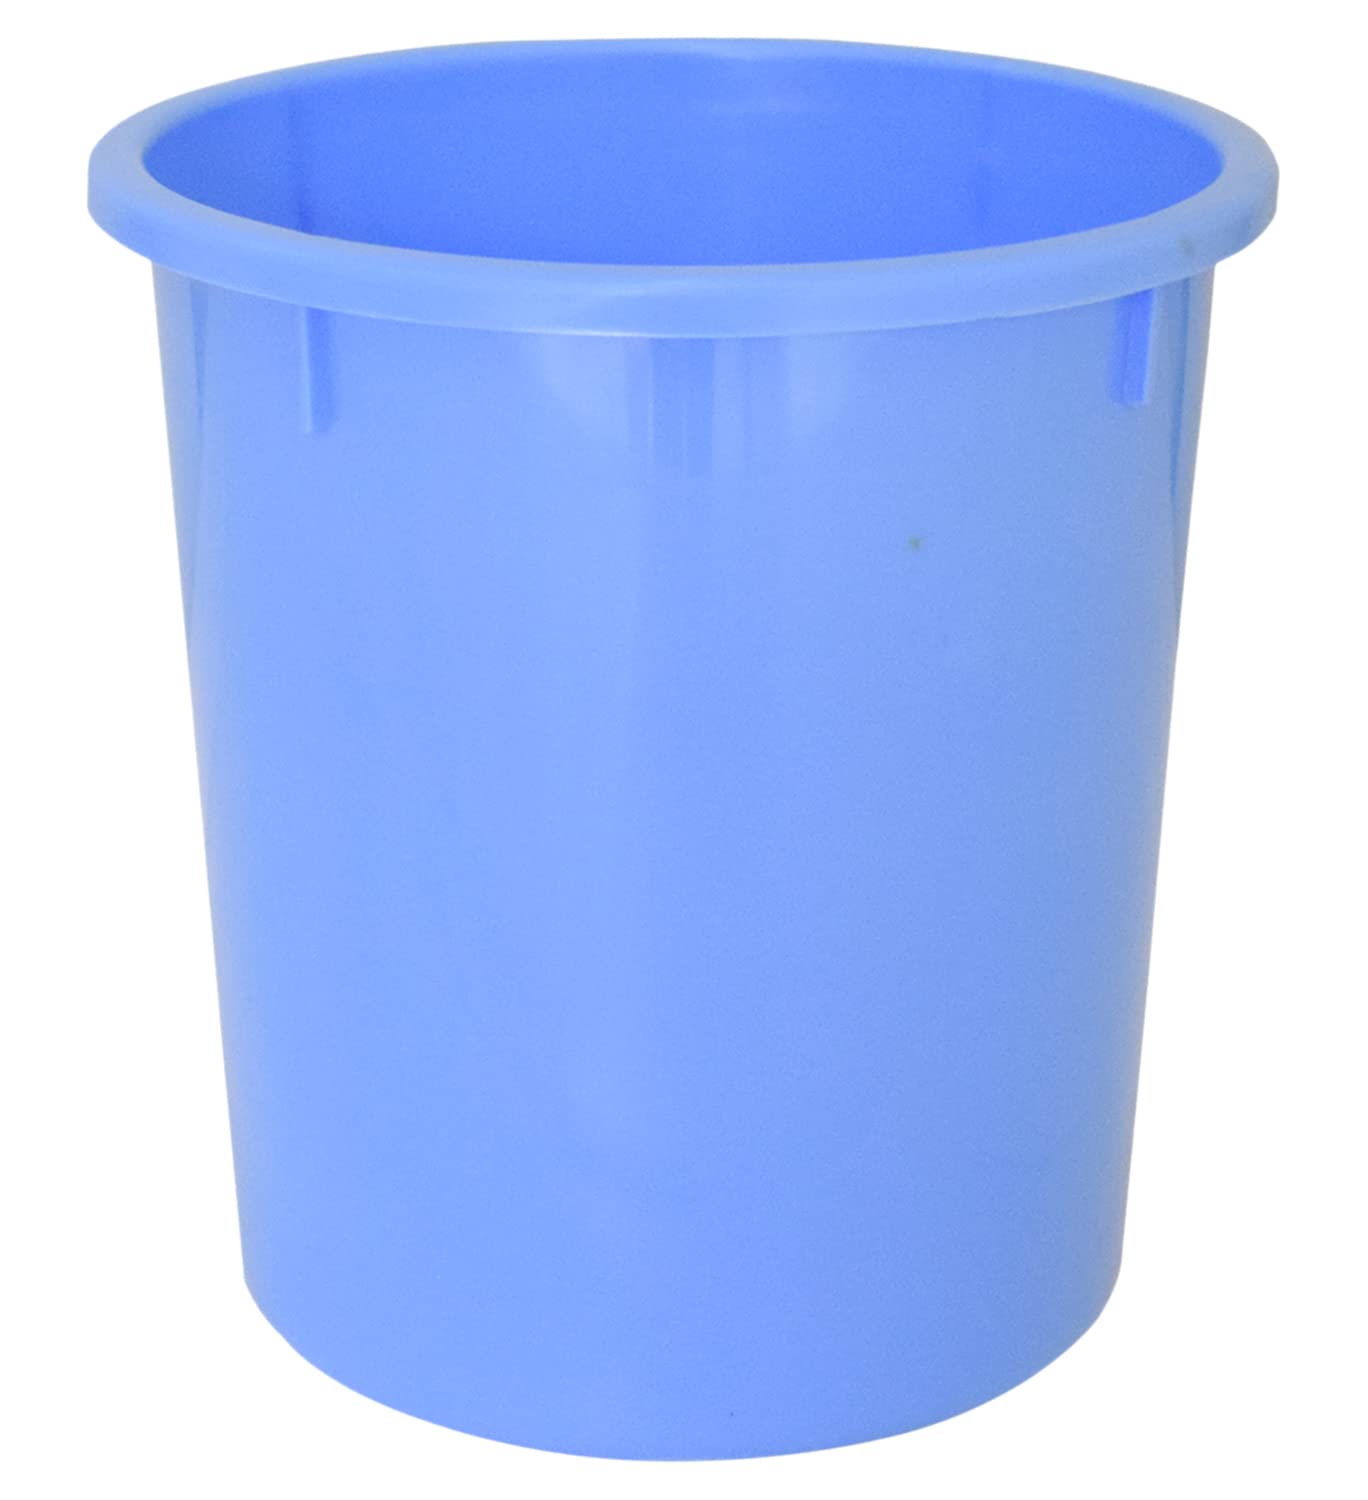 Kuber Industries Plastic Open Dustbin Trash Bin Garbage Bin Waste Bin 5Ltr. Blue-47KM01038